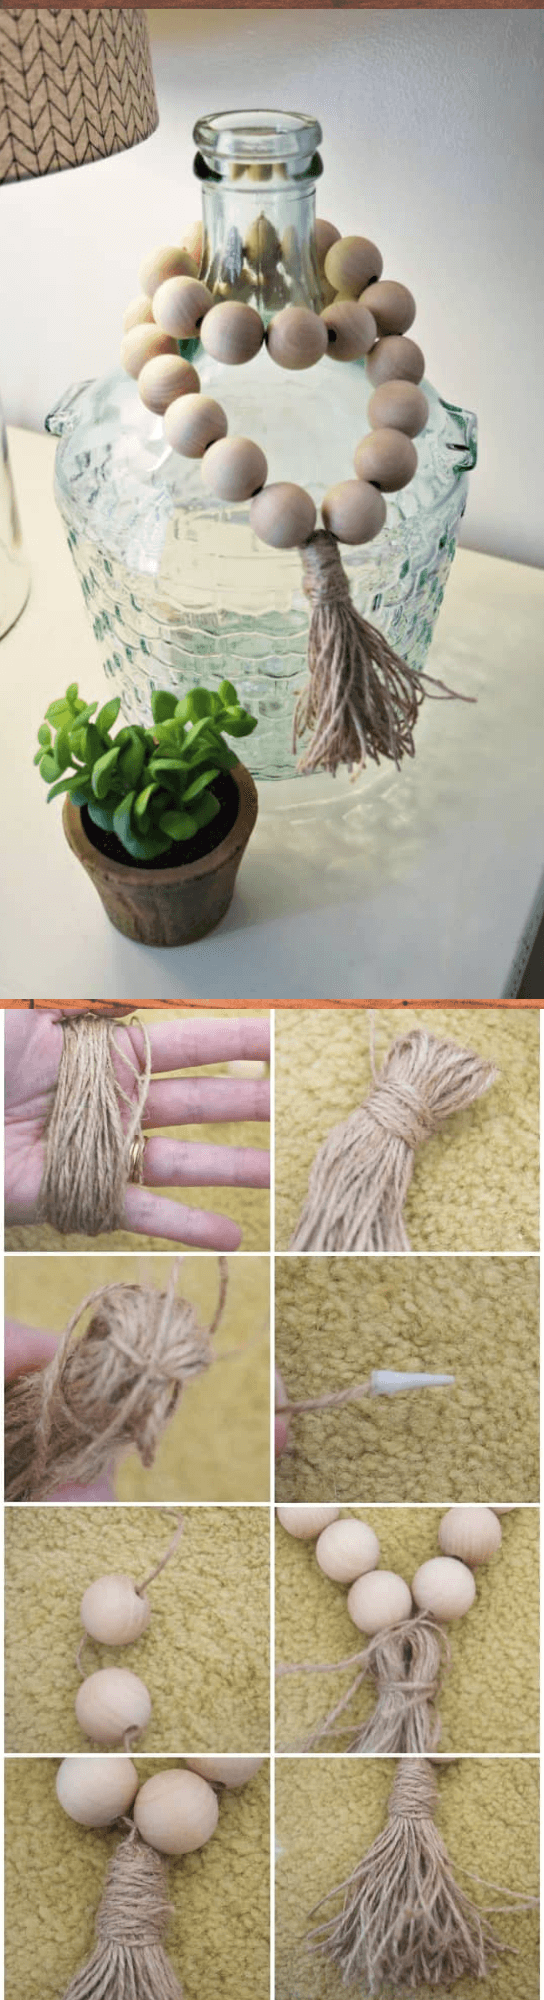 DIY wooden bead garlands